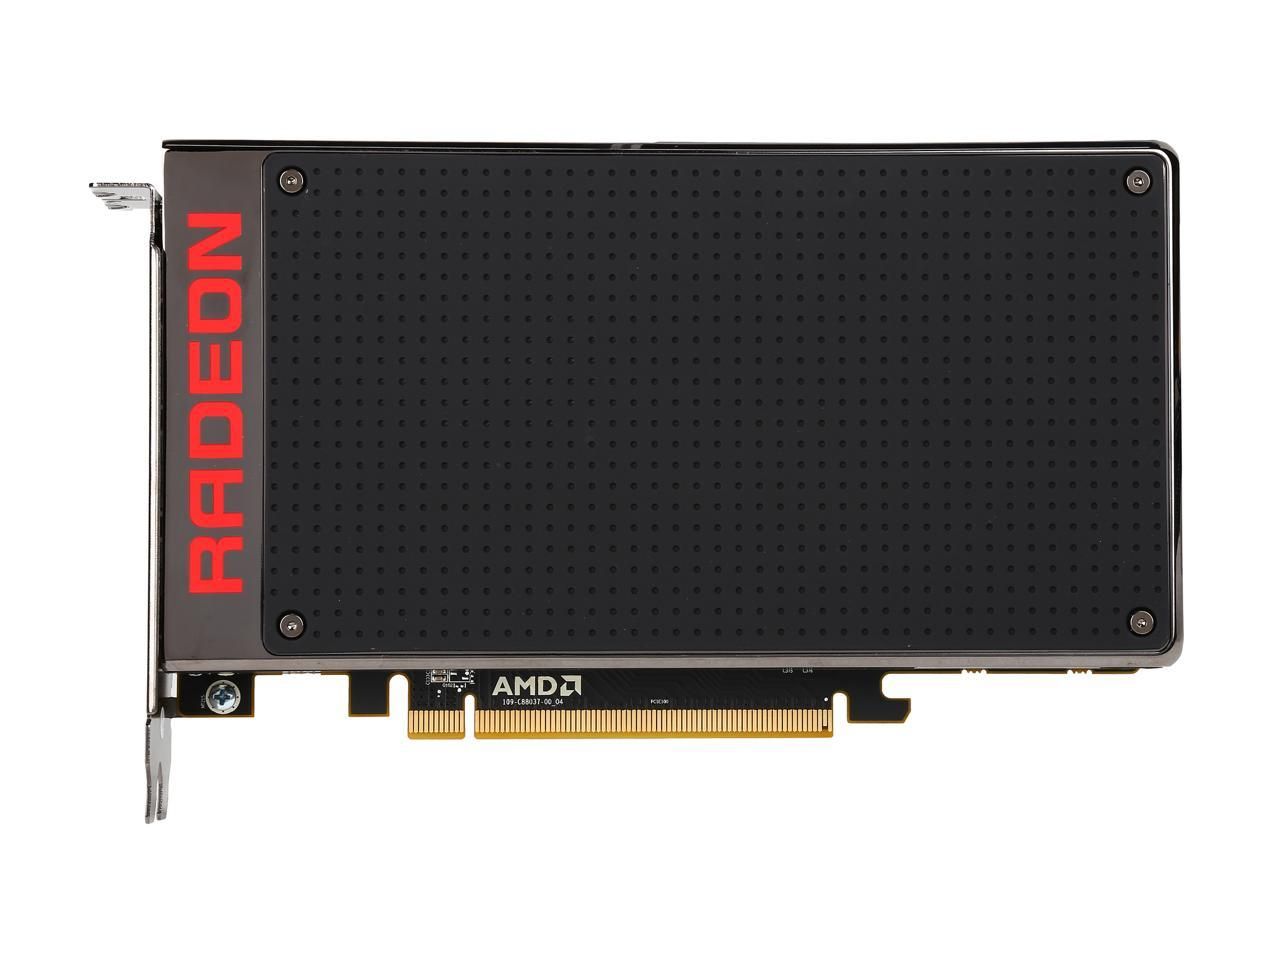 AMD R9 Fury X 4GB graphics card